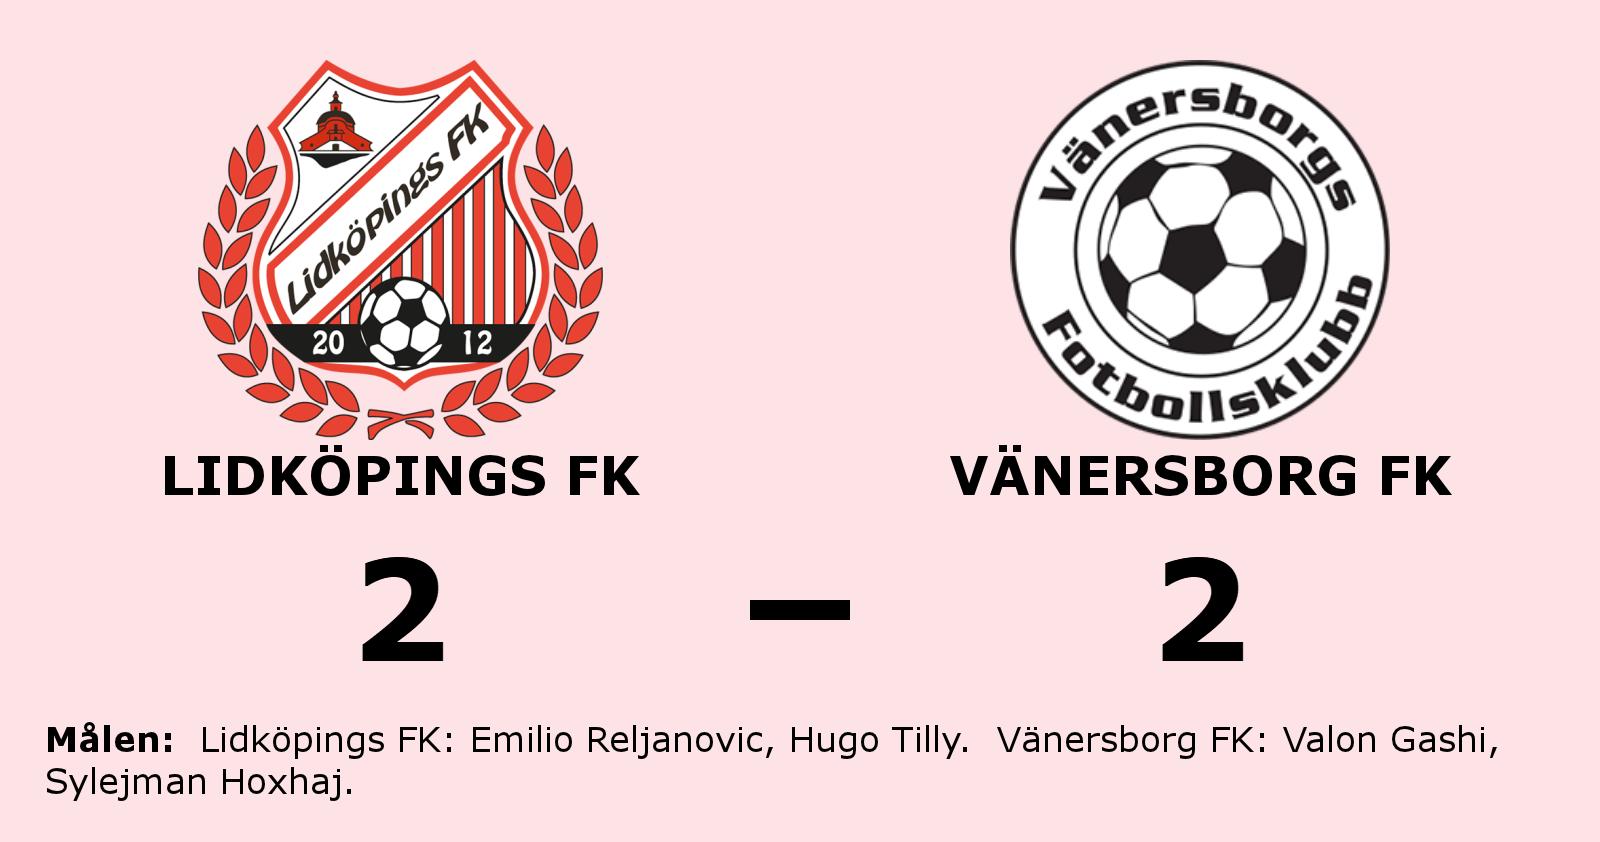 Vänersborg FK tappade ledning till oavgjort mot Lidköpings FK